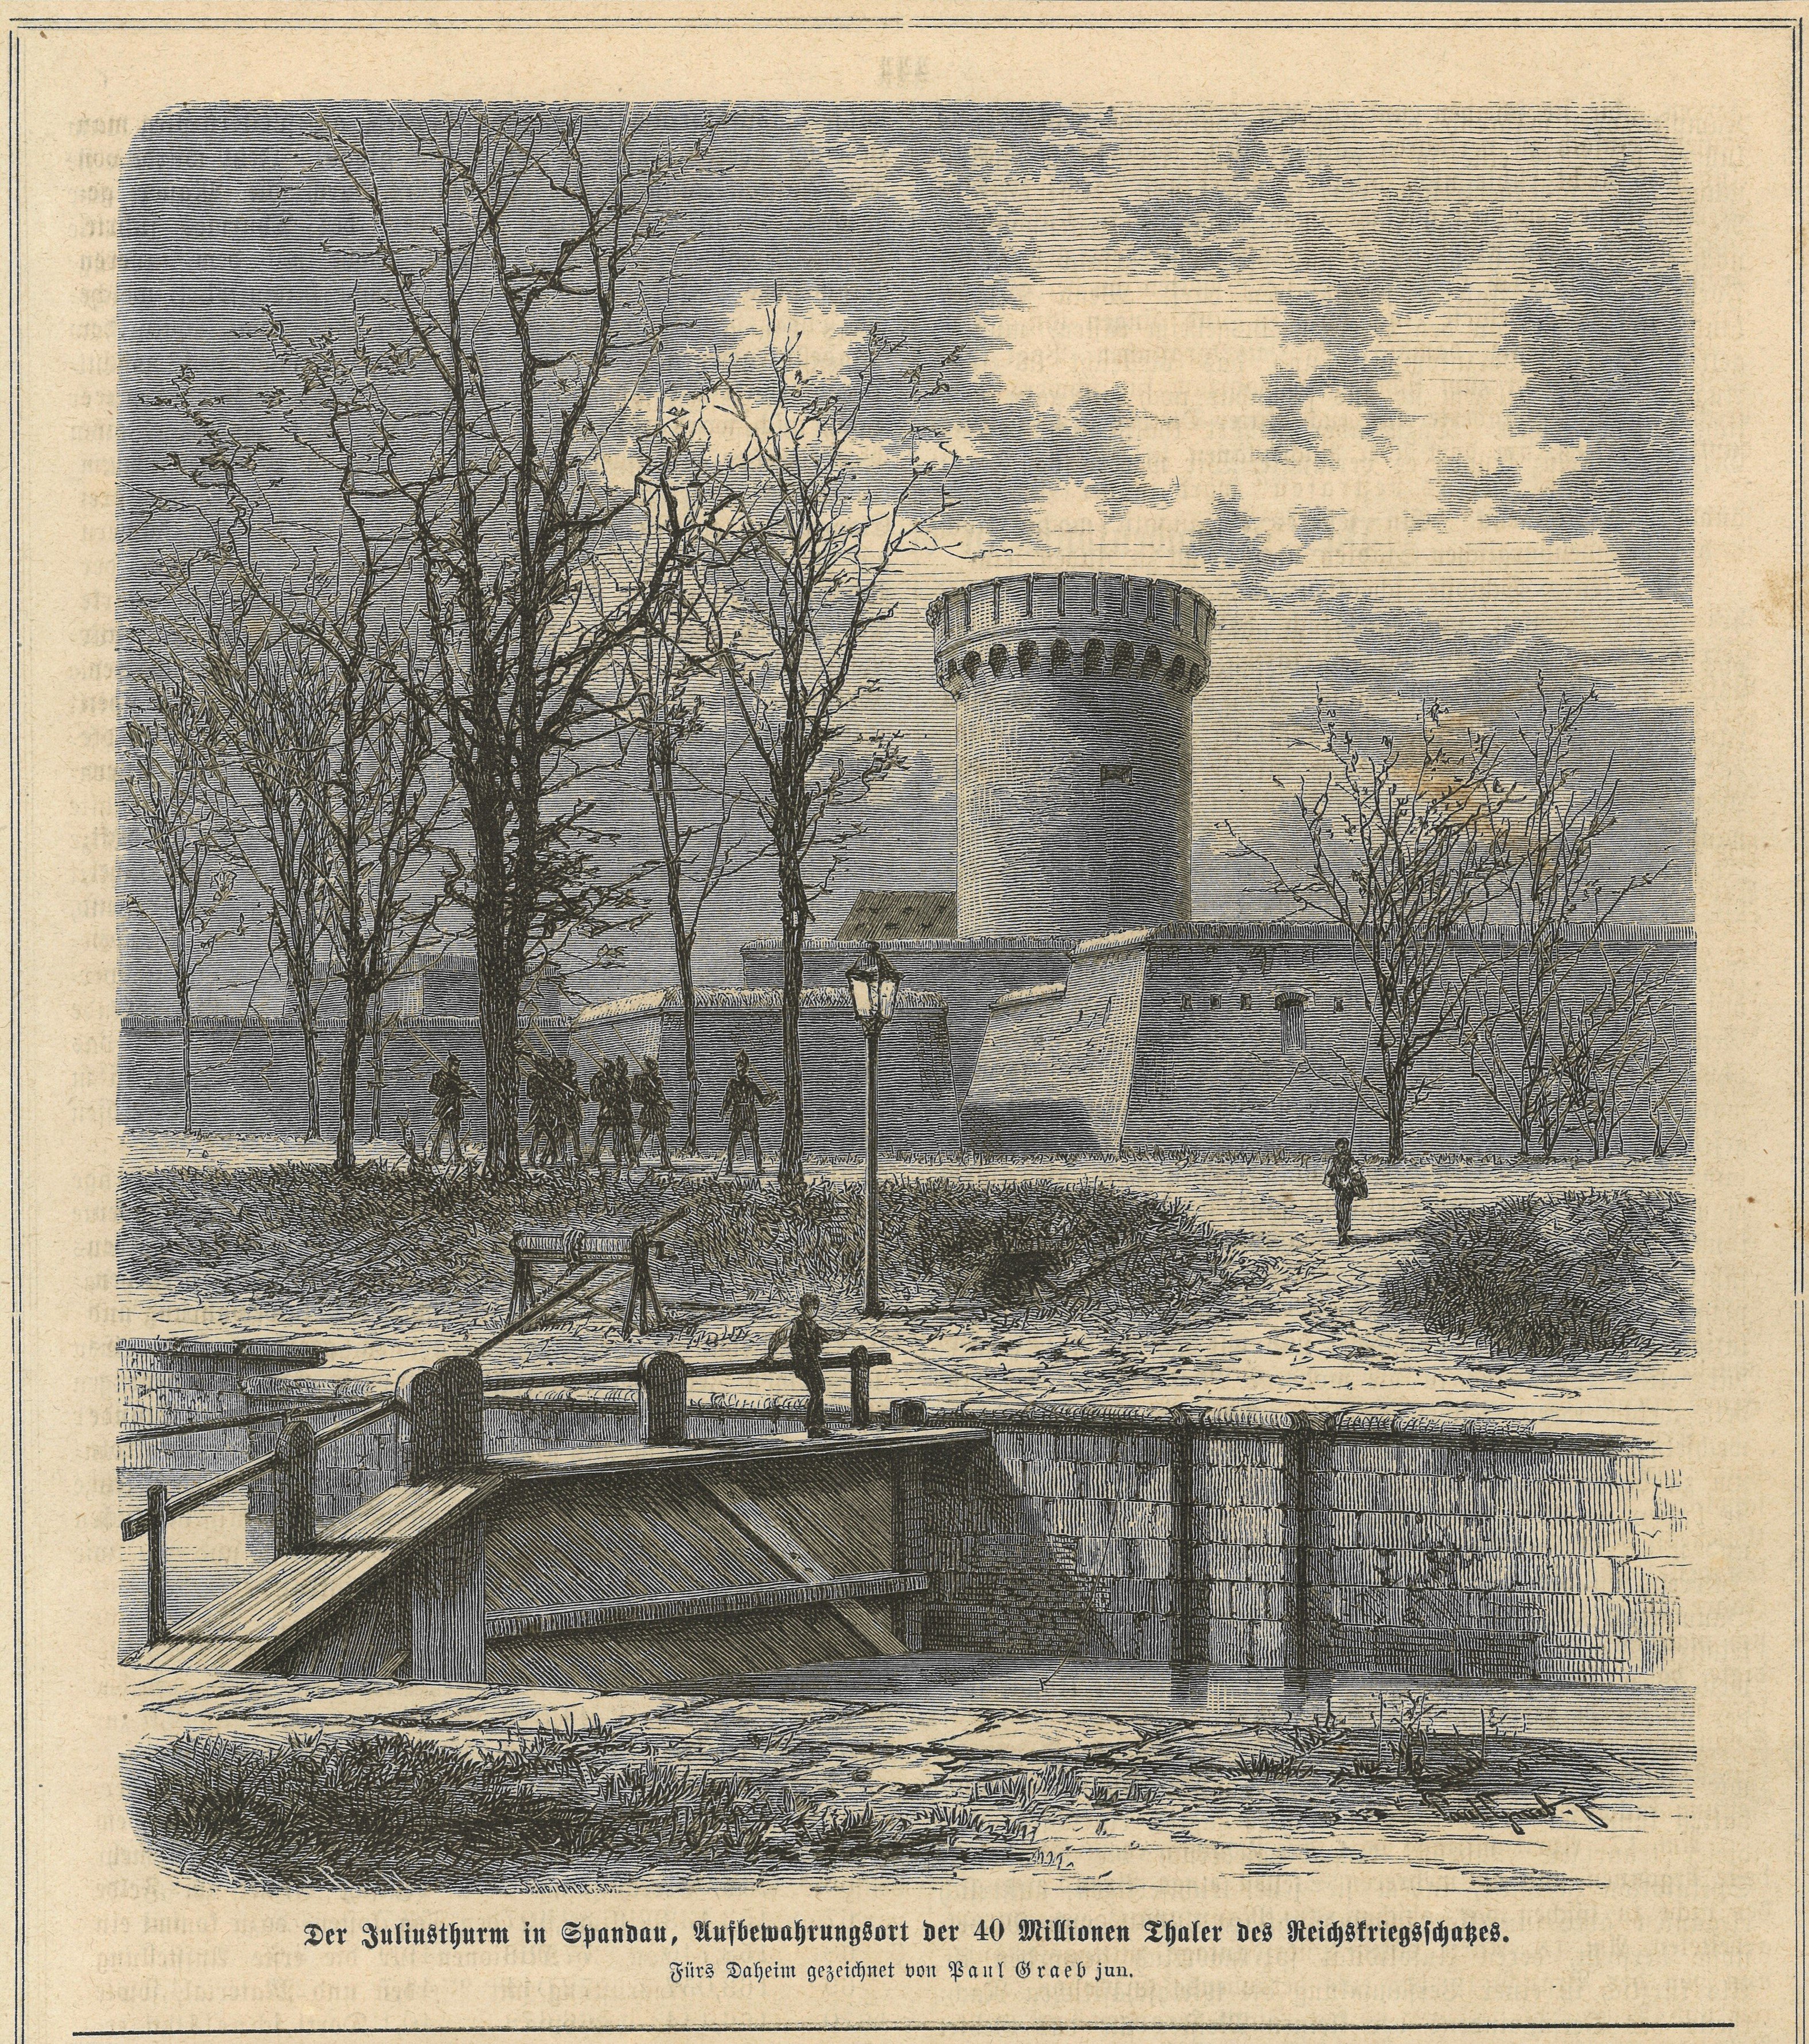 Berlin-Spandau: Zitadelle, Juliusturm (Landesgeschichtliche Vereinigung für die Mark Brandenburg e.V., Archiv CC BY)